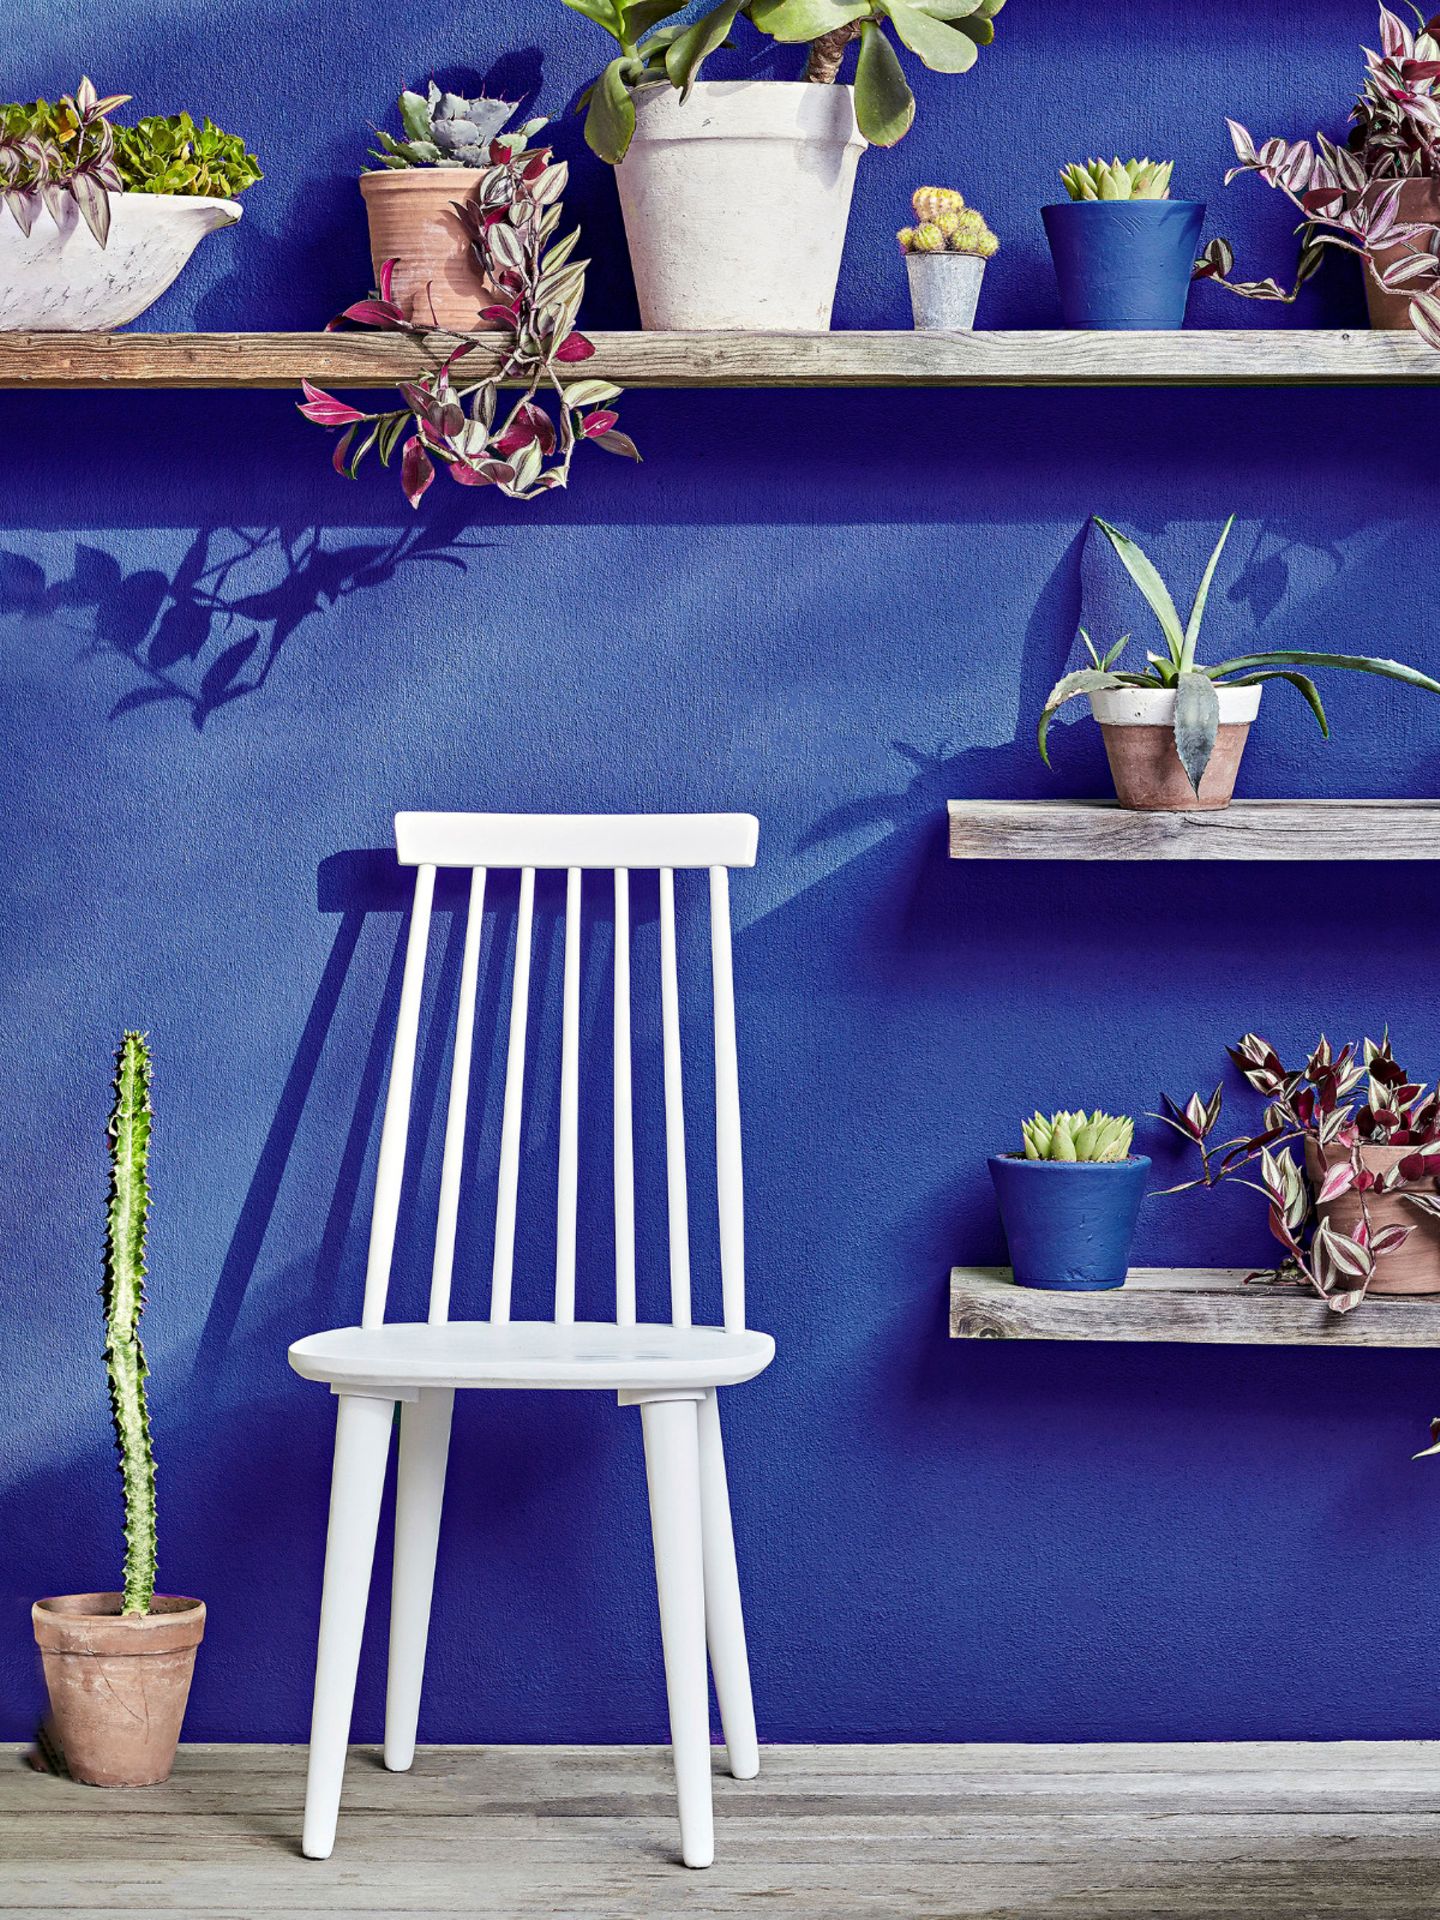 Blaue Terrassenwand mit einem weißen Stuhl und verschiedenen Pflanzentöpfen auf drei Wandregalen davor